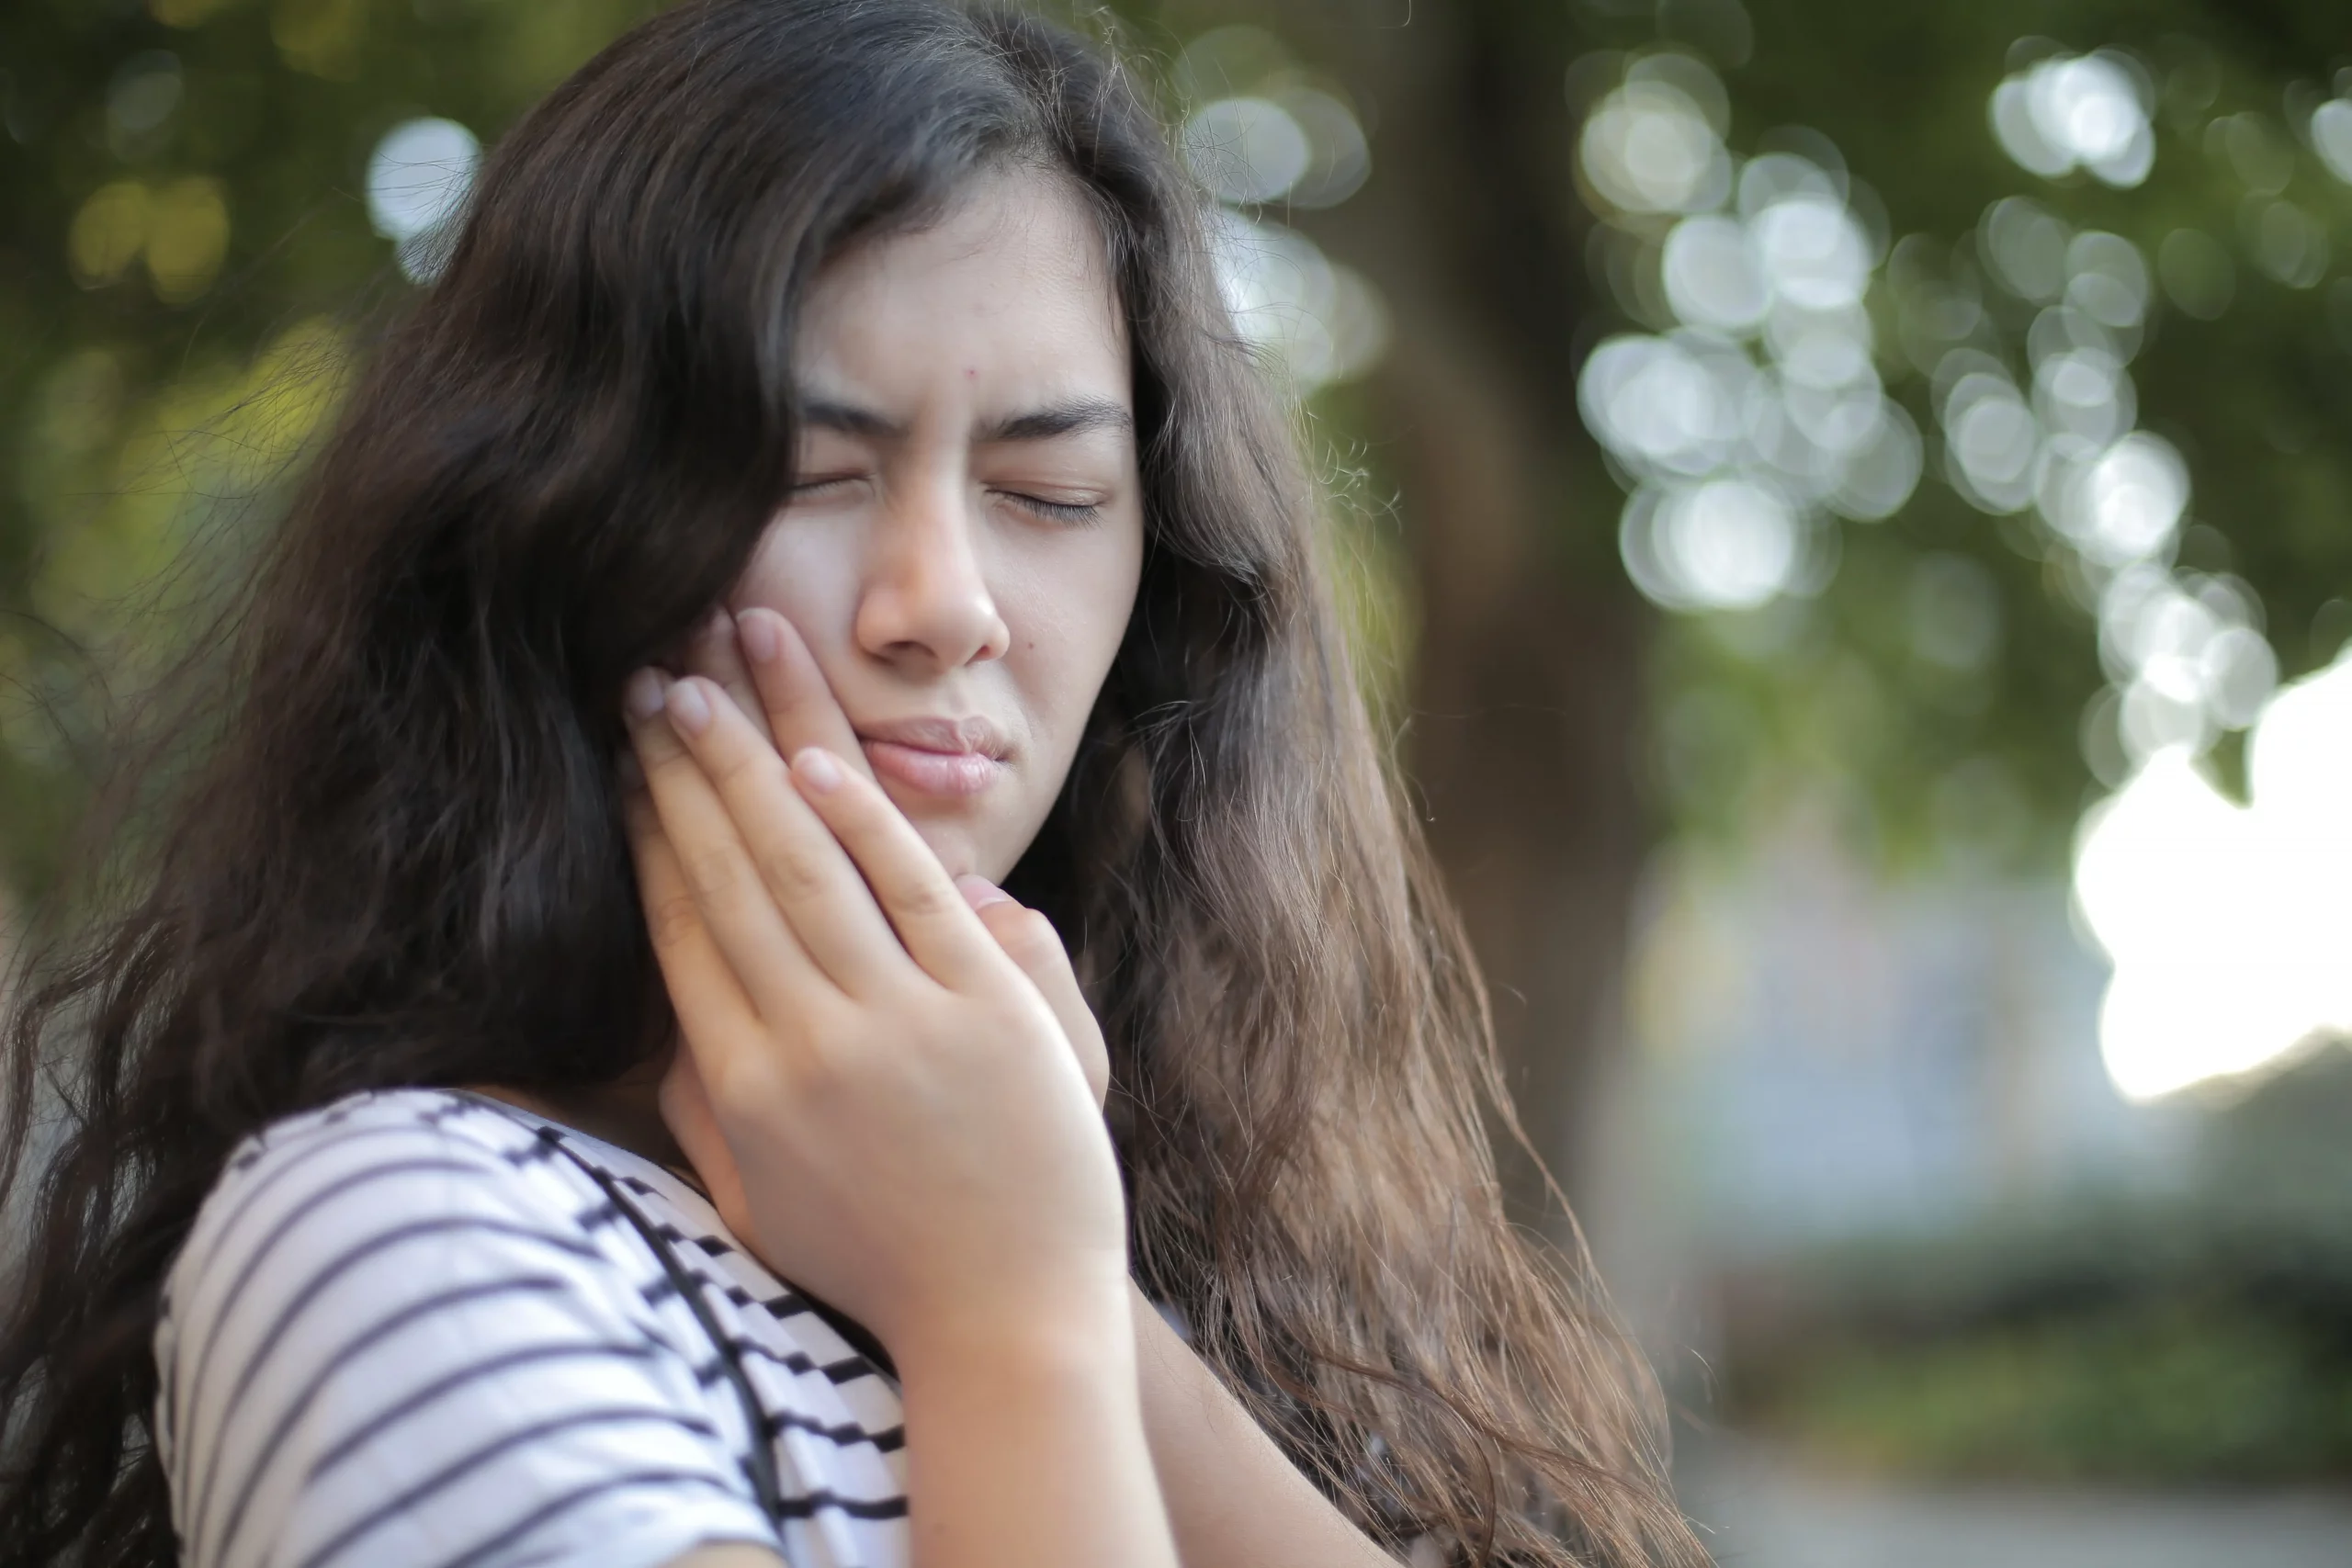 Zuviel Stress? Symptome können ungewöhnlich sein, zum Beispiel Zahn- und Kieferschmerzen.